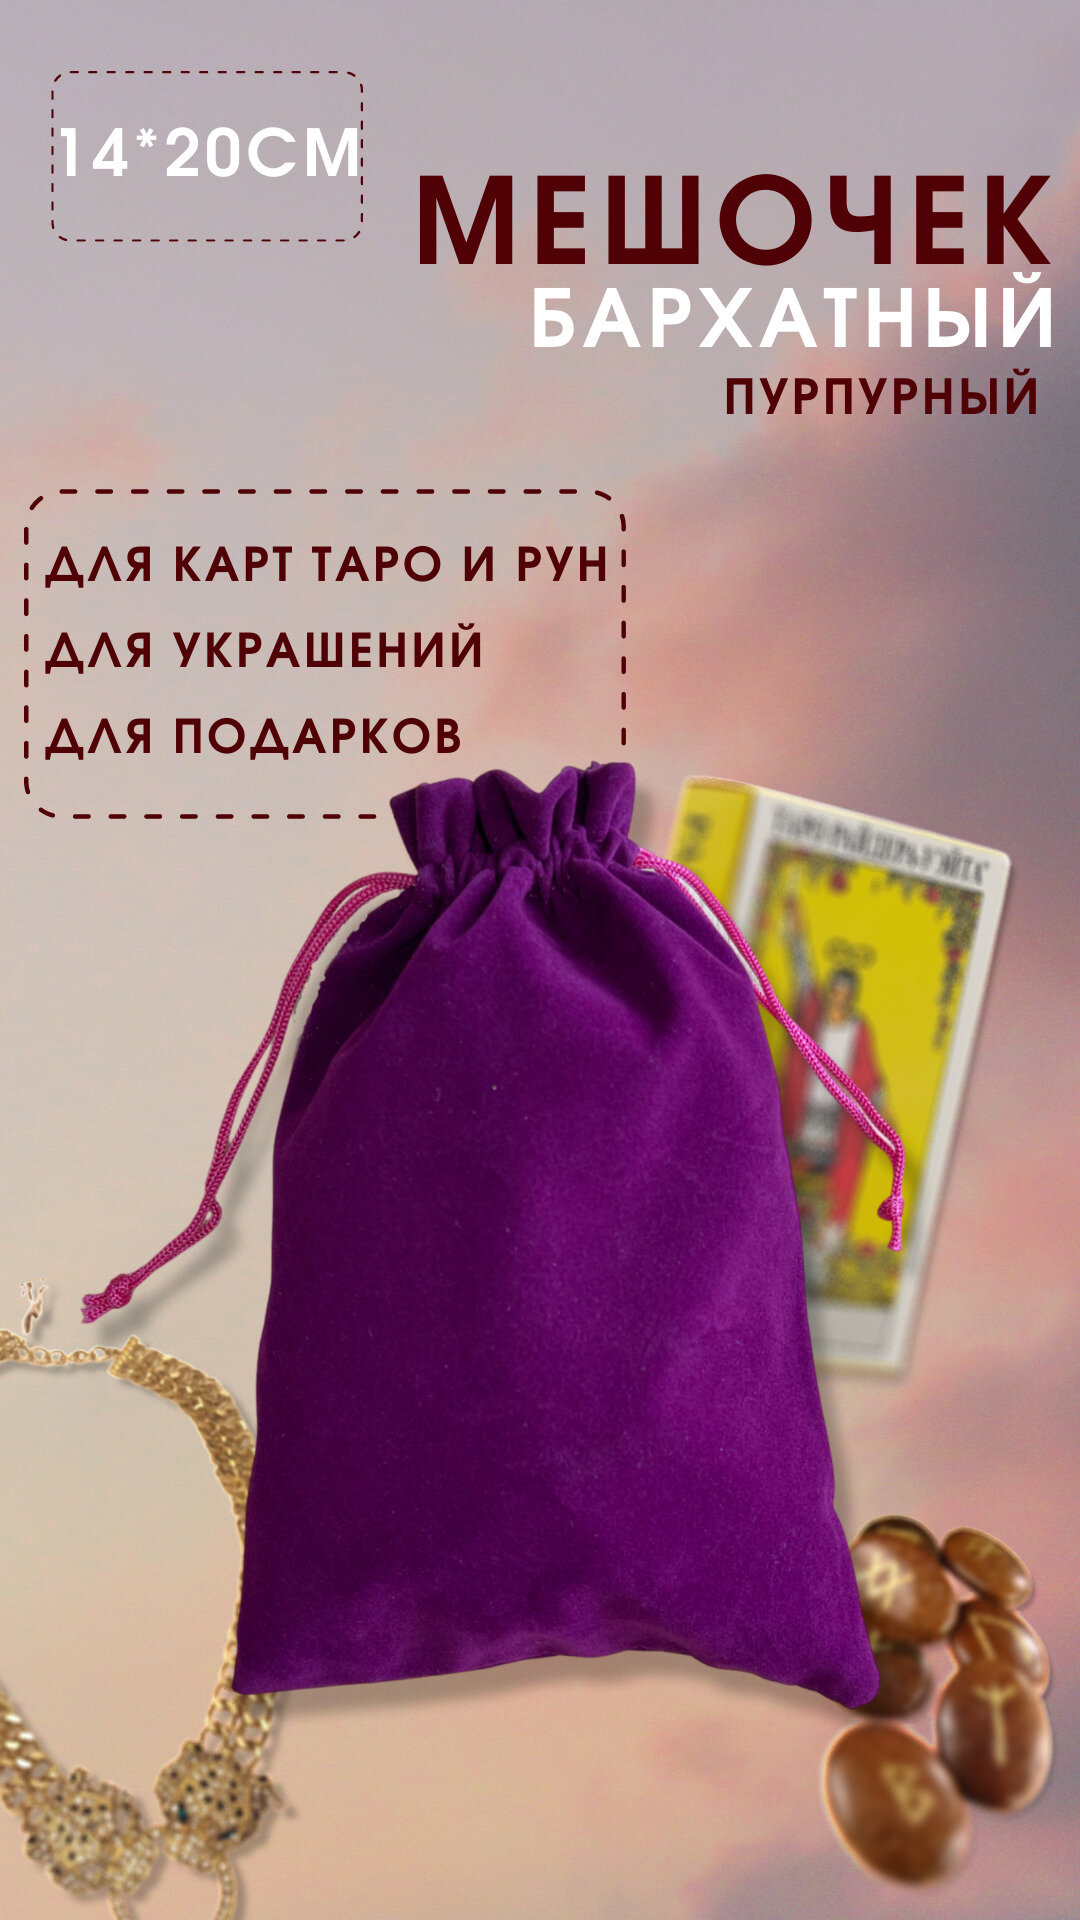 Мешочек для хранения карт Таро 14х20 см / Мешочек подарочный для украшений, пурпурный